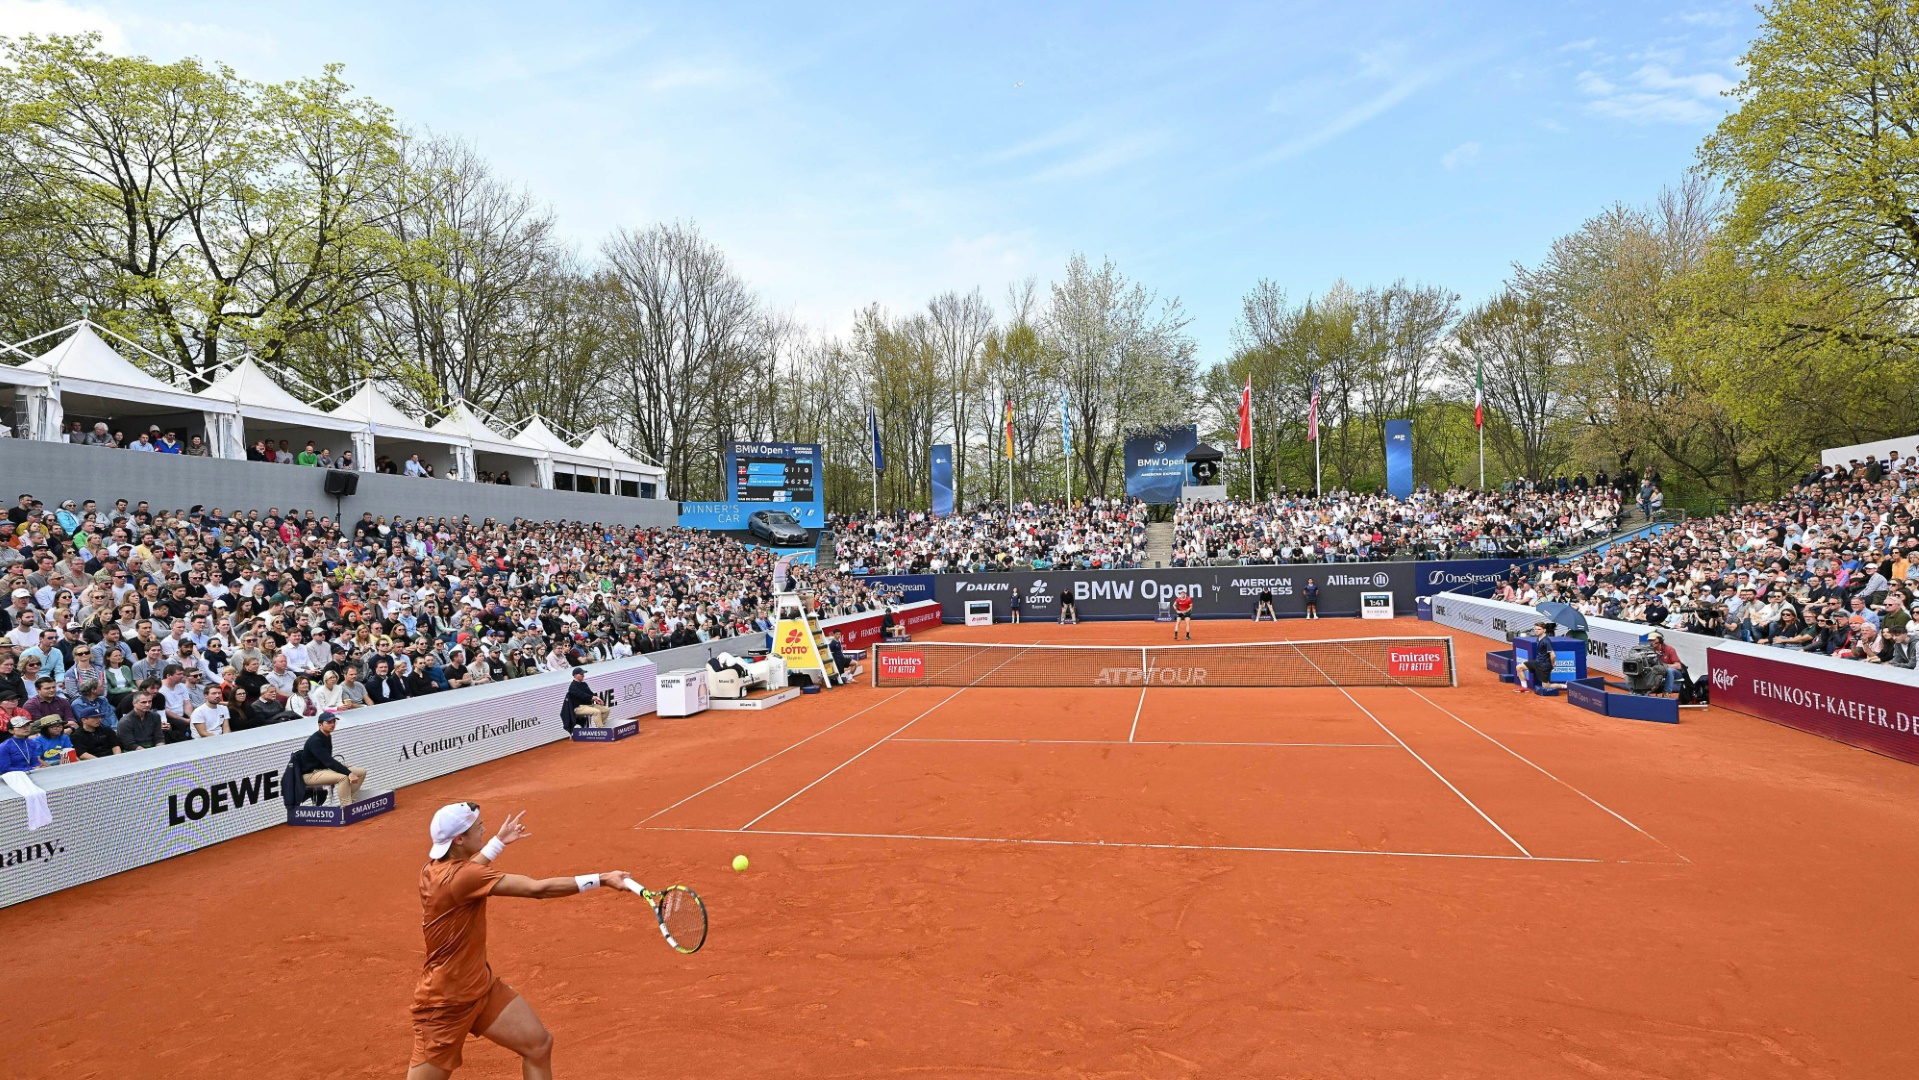 Tennis ATP stuft Open-Turnier in München hoch